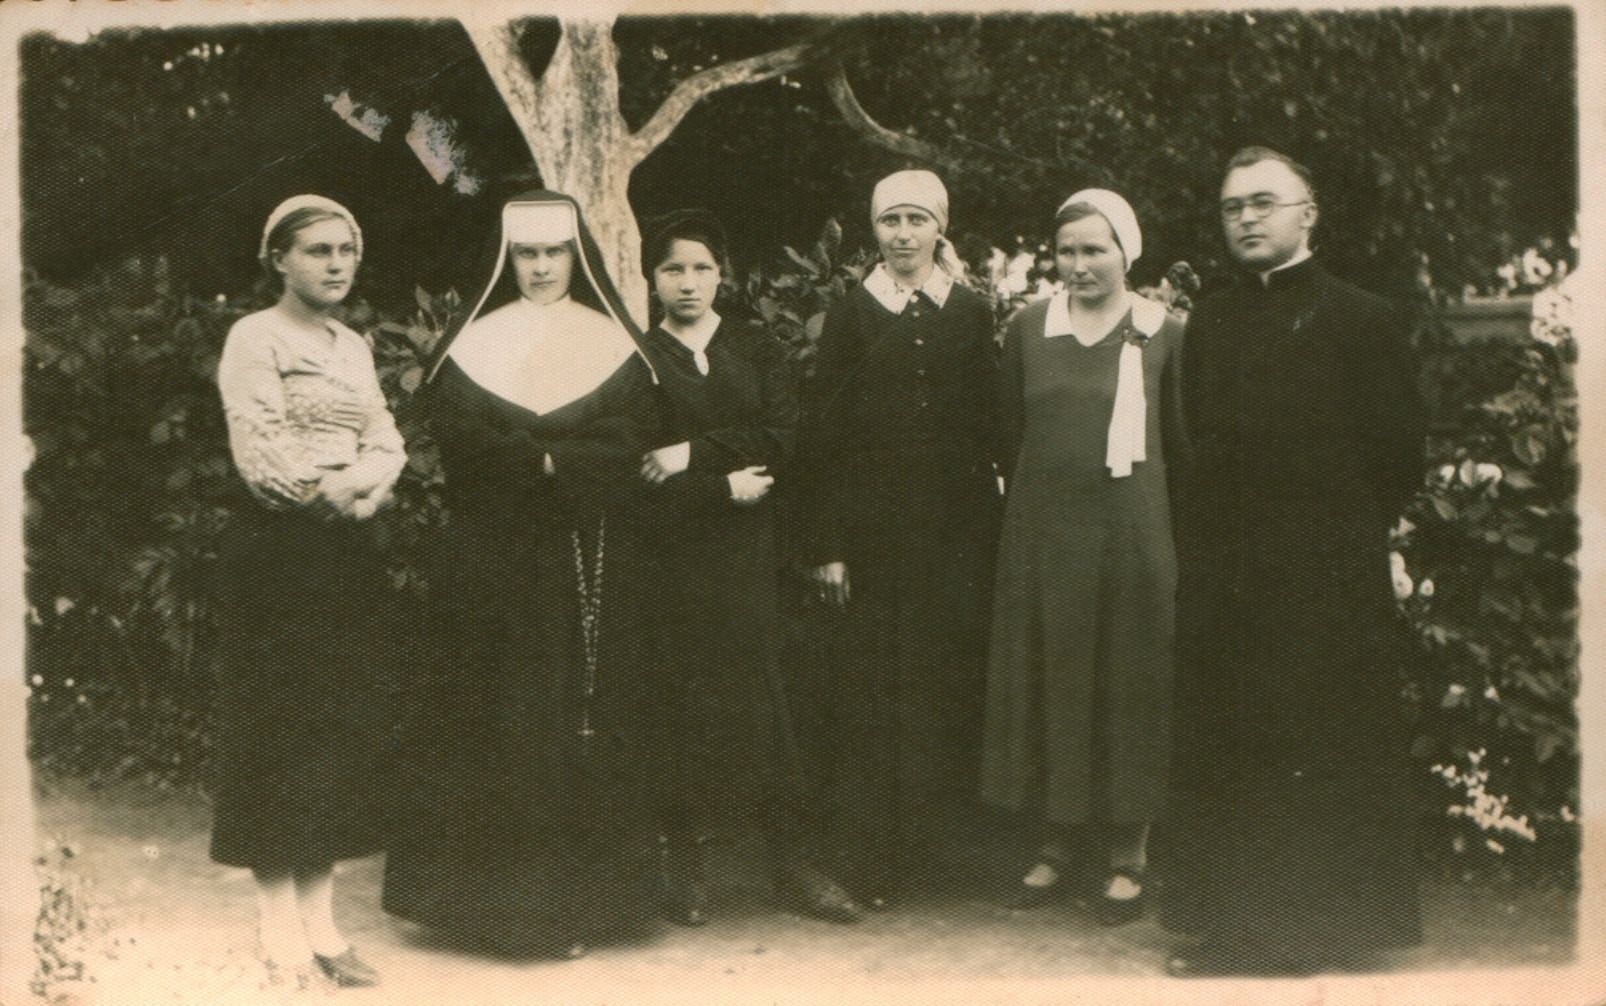 S. Būdavas sesers Vincentos įvilktuvių į vienuoles dieną. Krakės, 1932 m. MLLM 100026